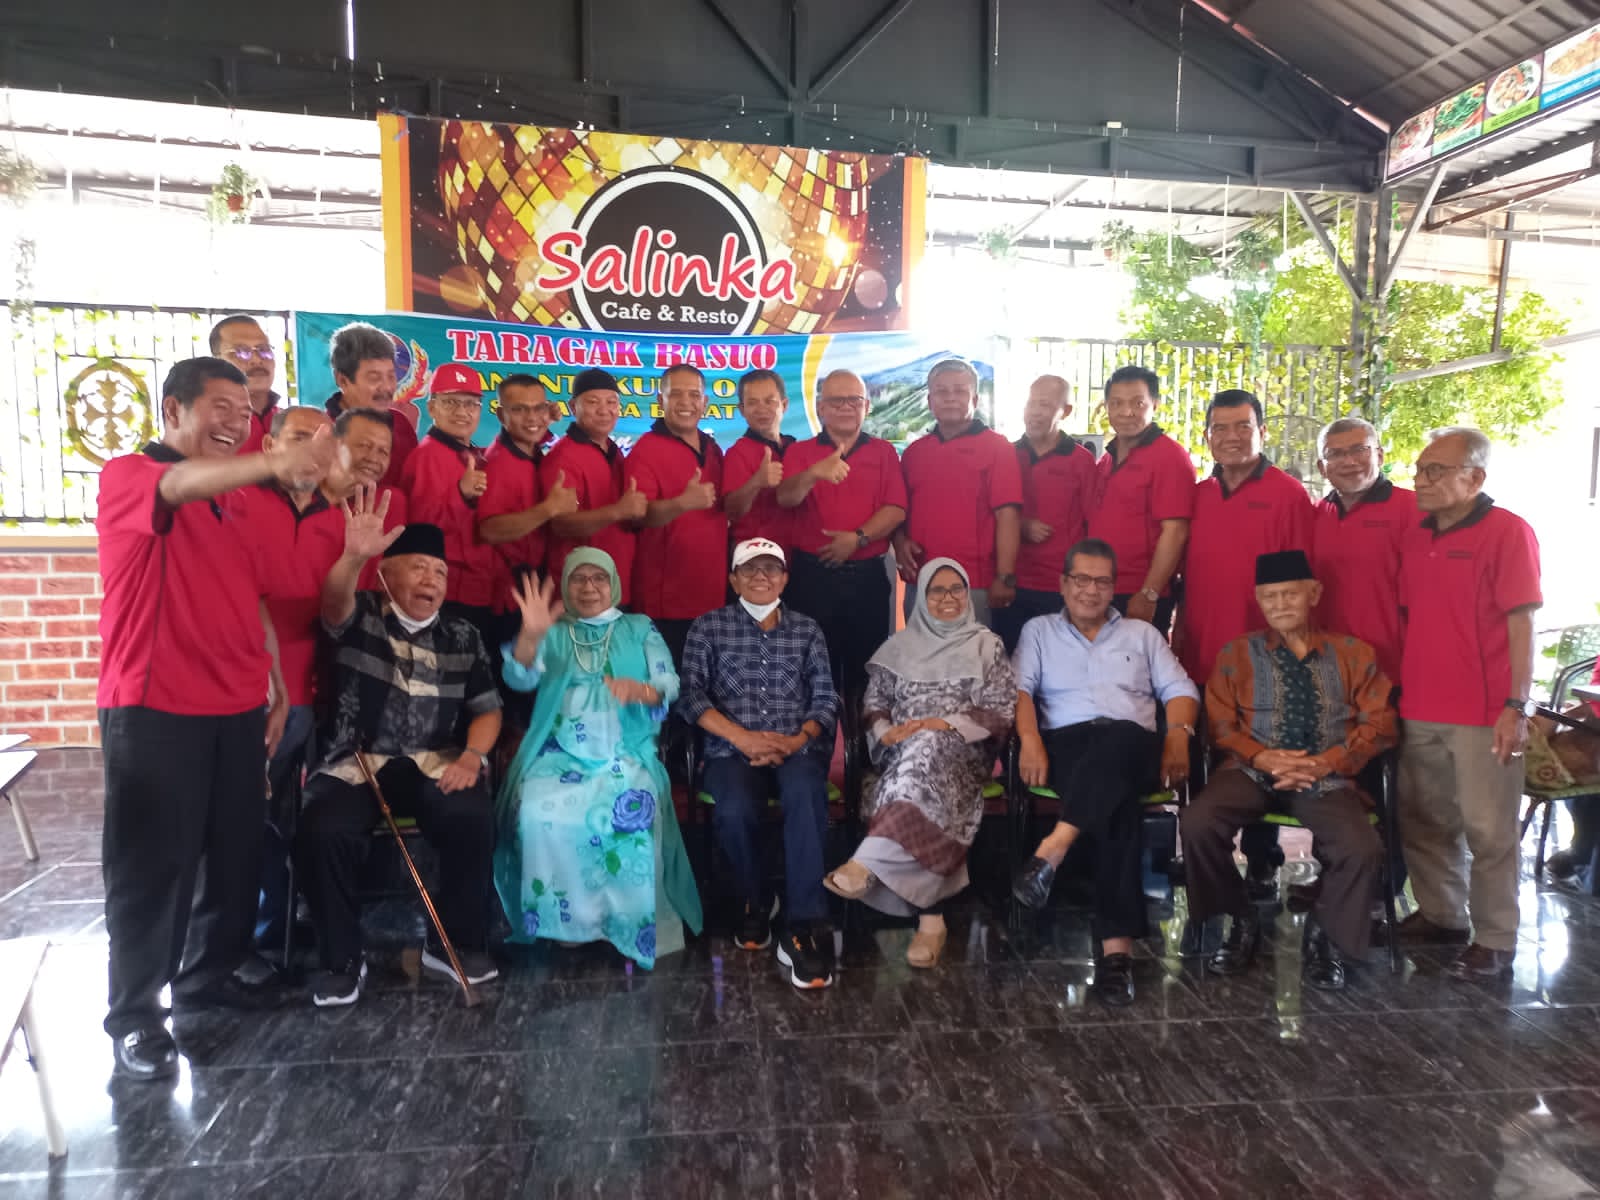 Keluarga Besar Anantakupa 05 angkatan 89, adakan acara Taragak Basuo untuk membangun silaturahmi dan semangat berkarya, di Padang, Sabtu (11/12/2021).